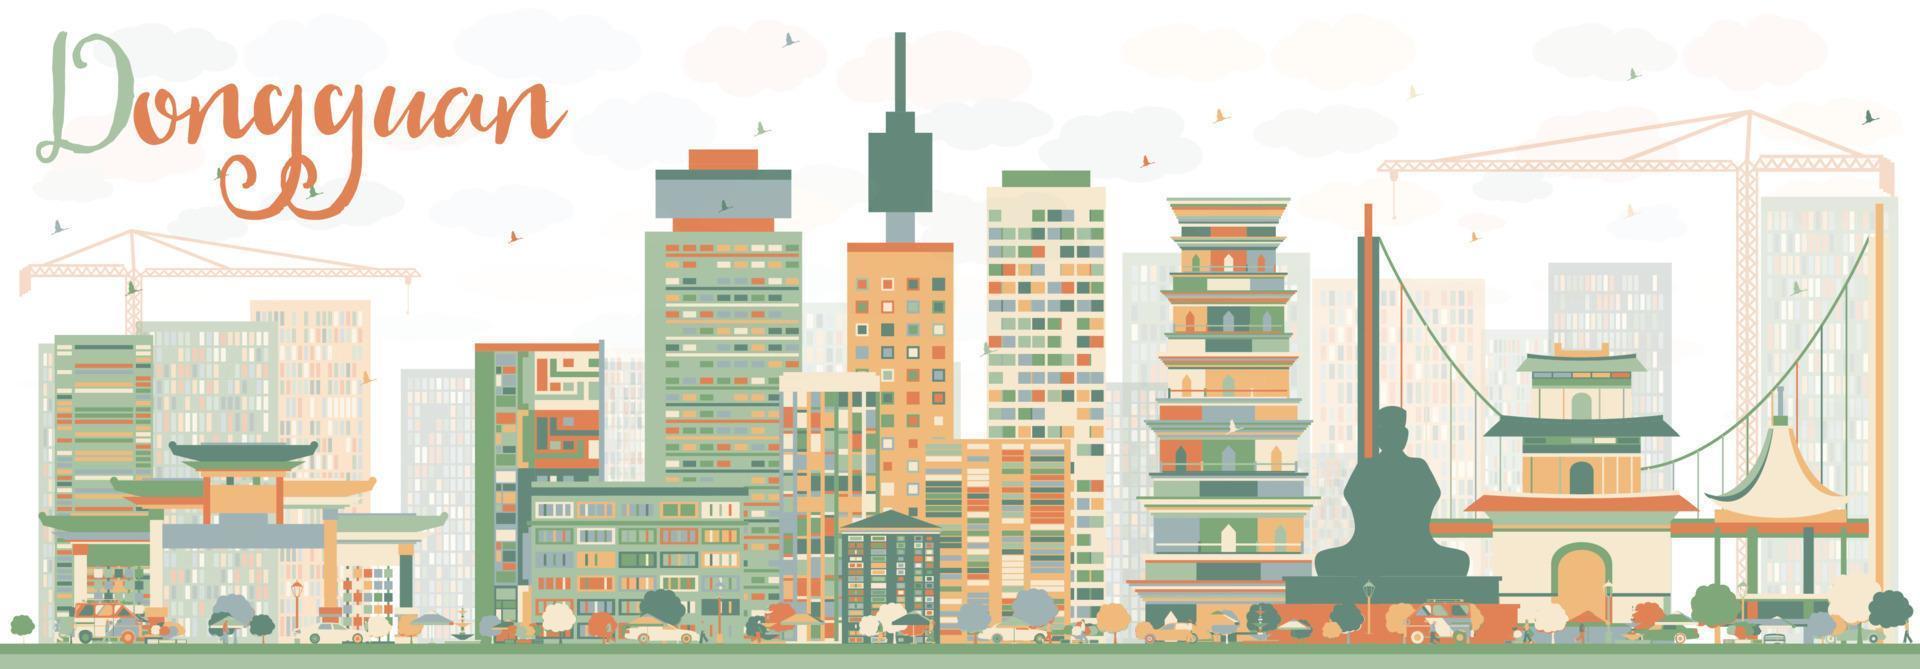 abstrakt dongguan skyline med färg byggnader. vektor